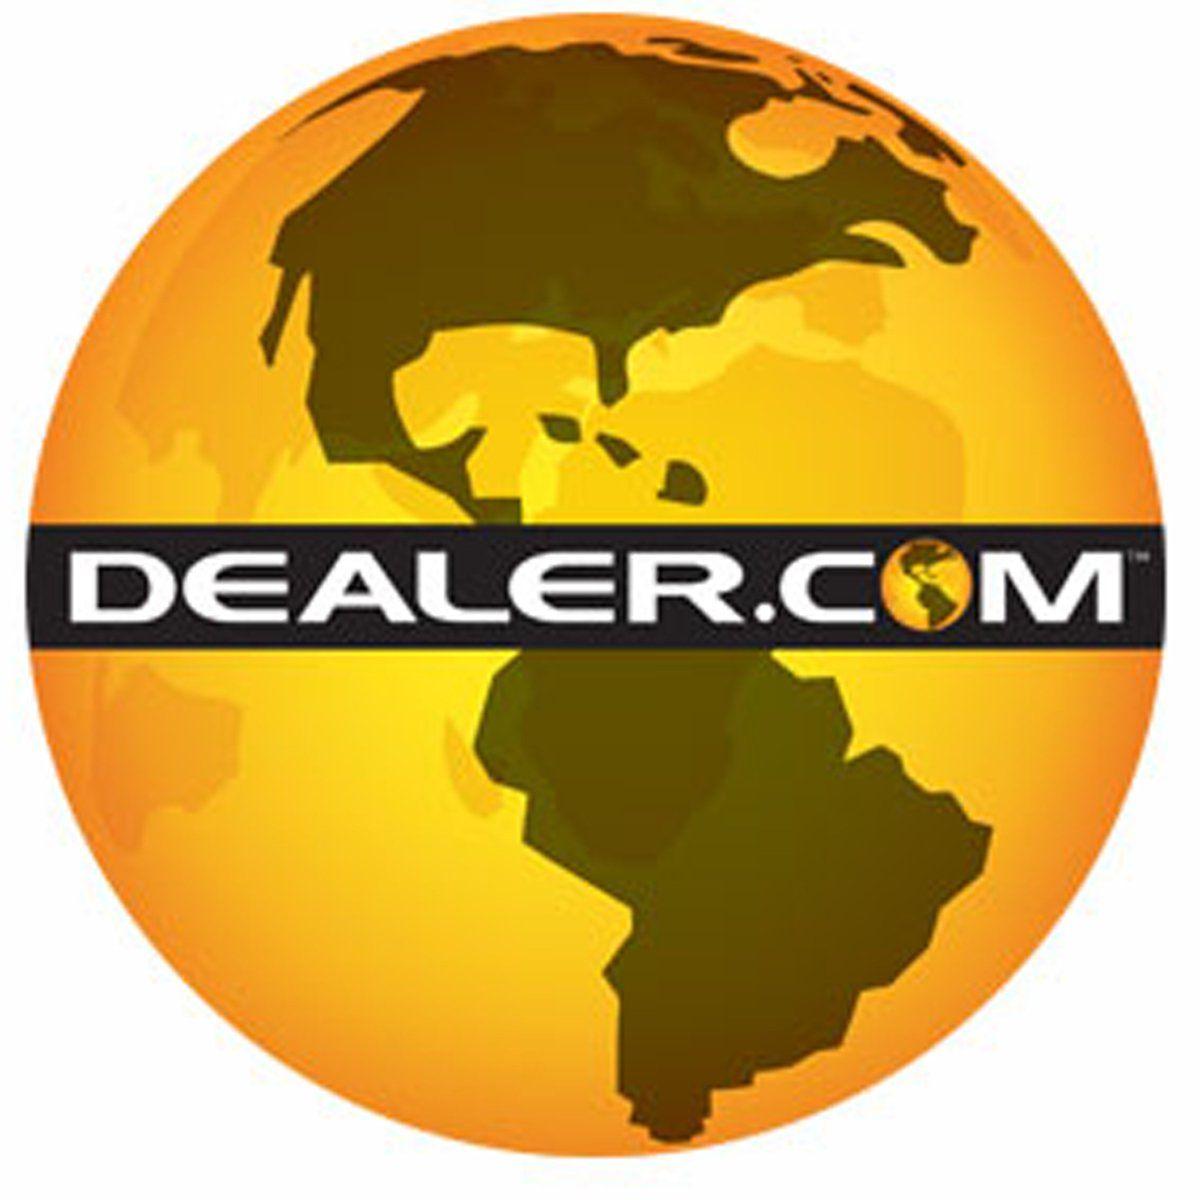 Dealer.com Logo - Dealer.com RELEASE